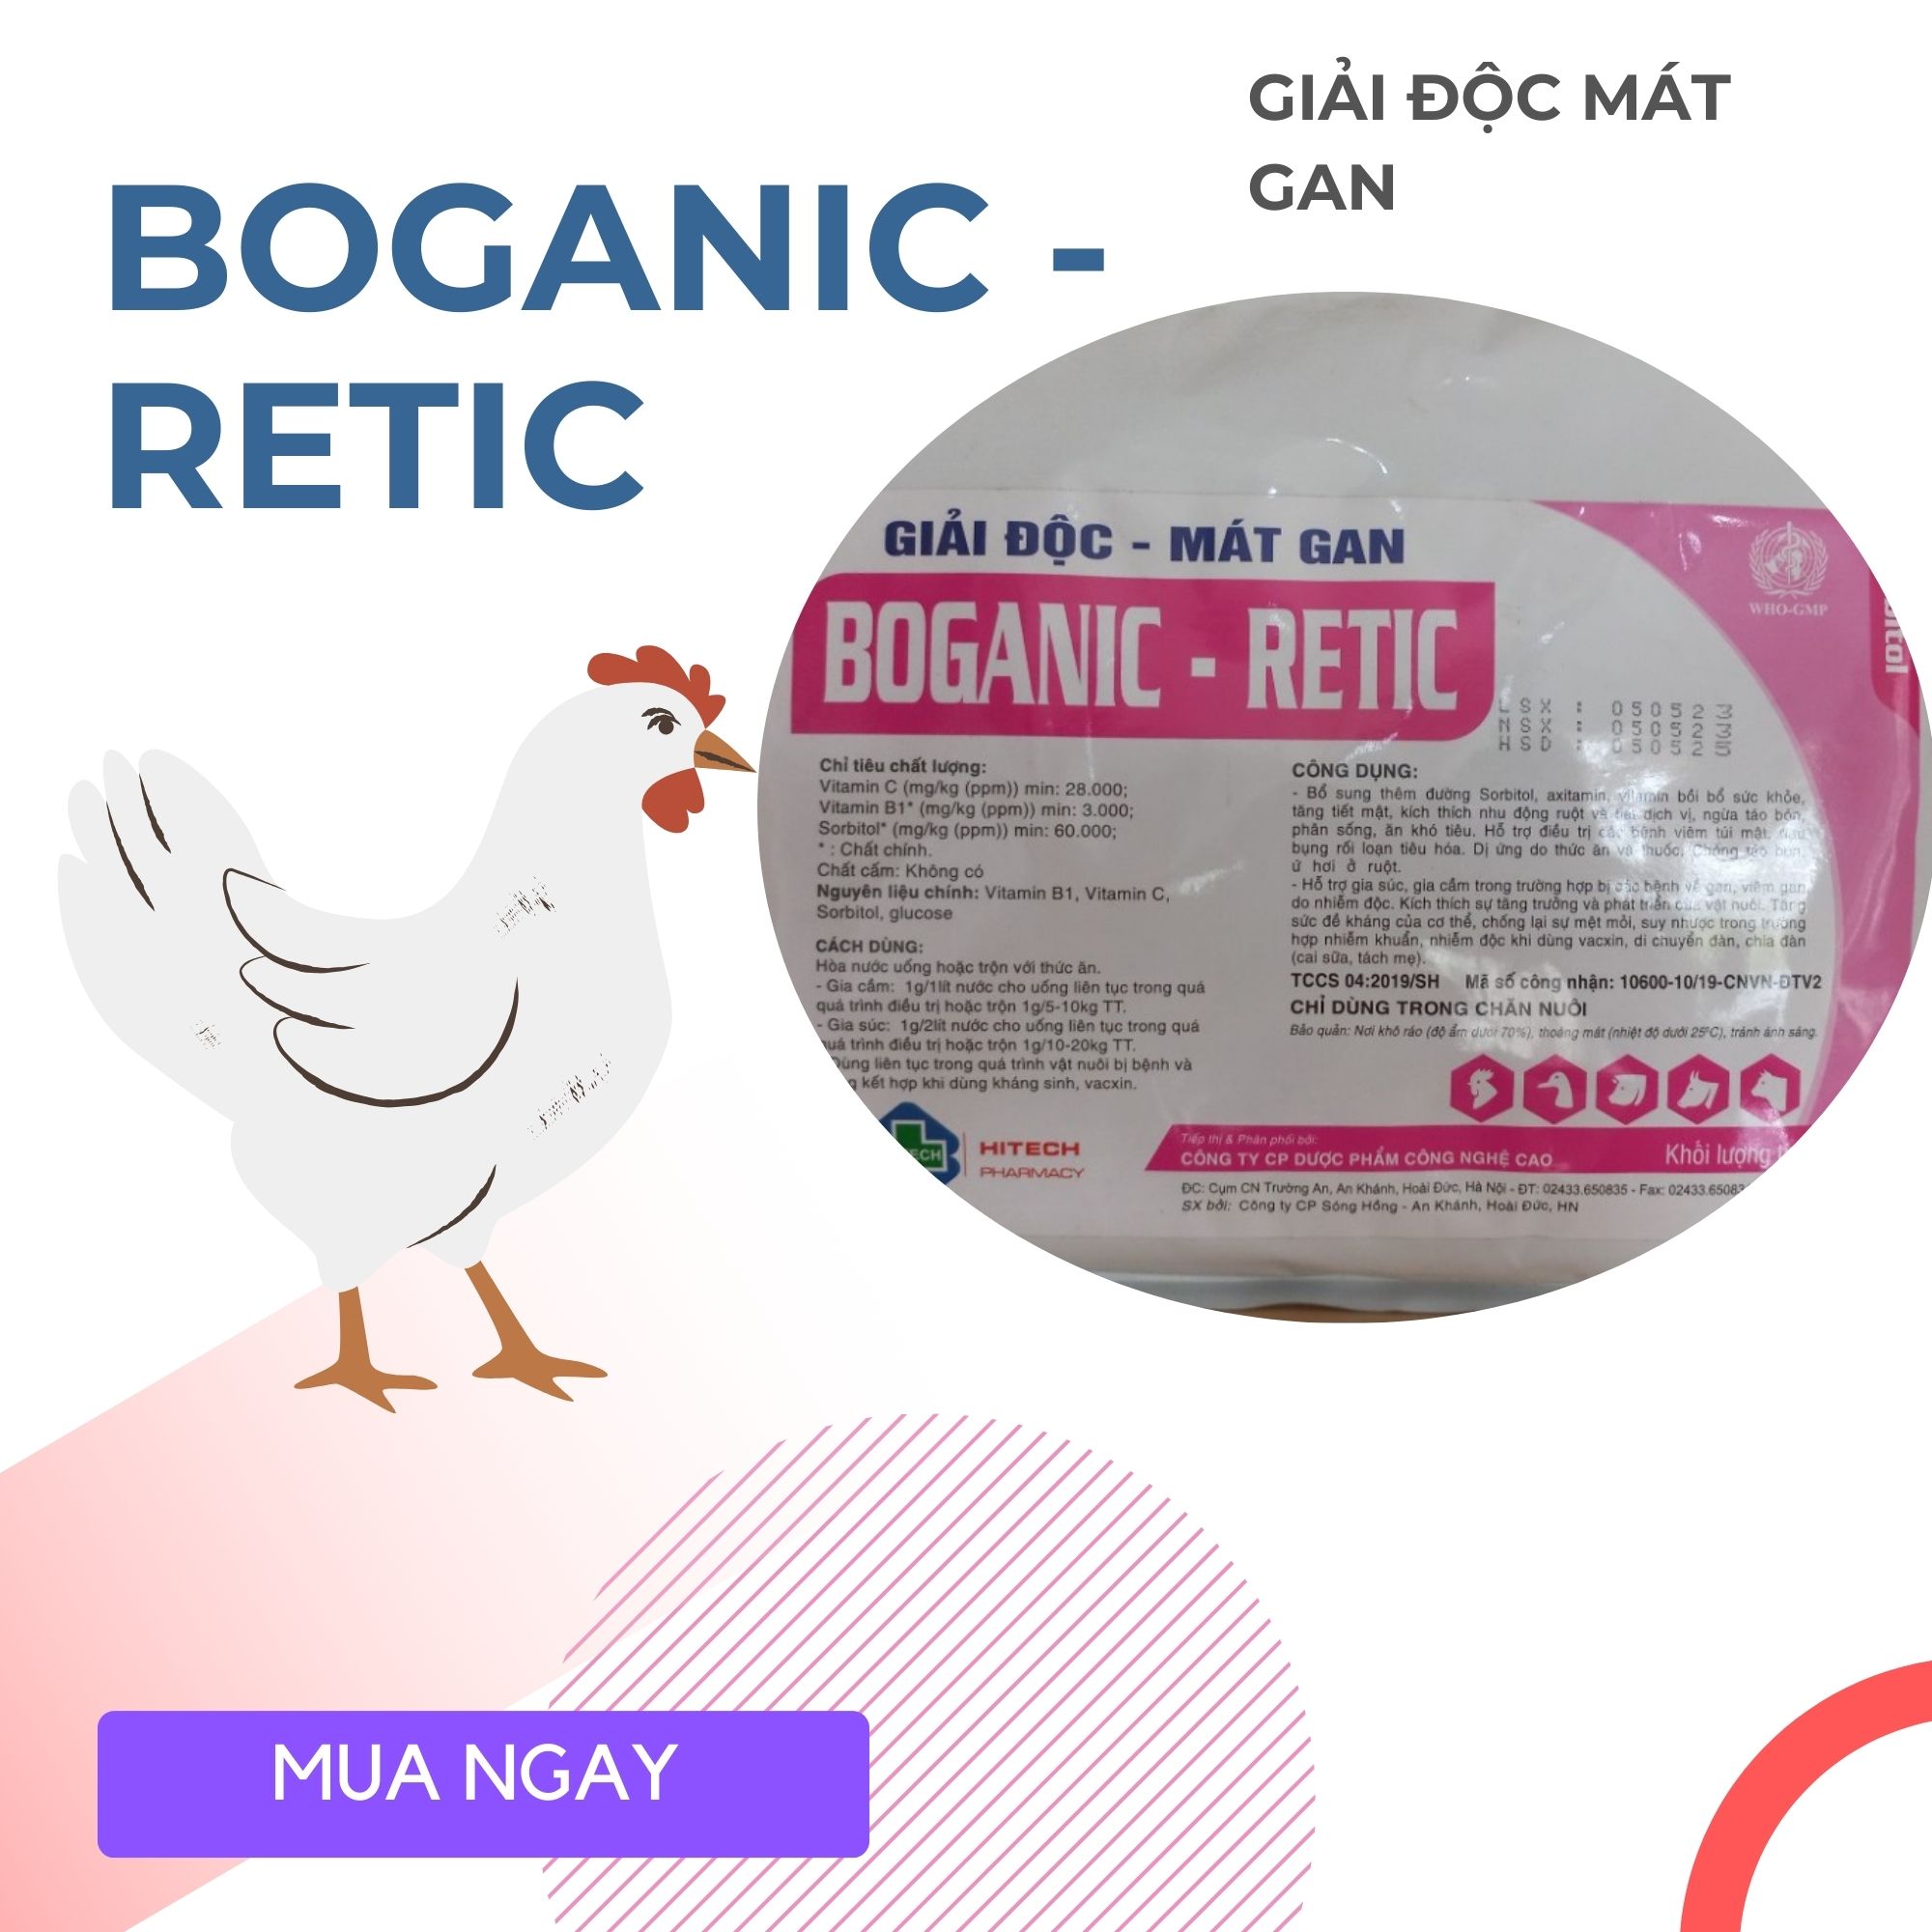 Boganic - Retic dạng bột  giải độc mát gan dành cho heo  tăng cường chức năng gan bị nhiễm độc